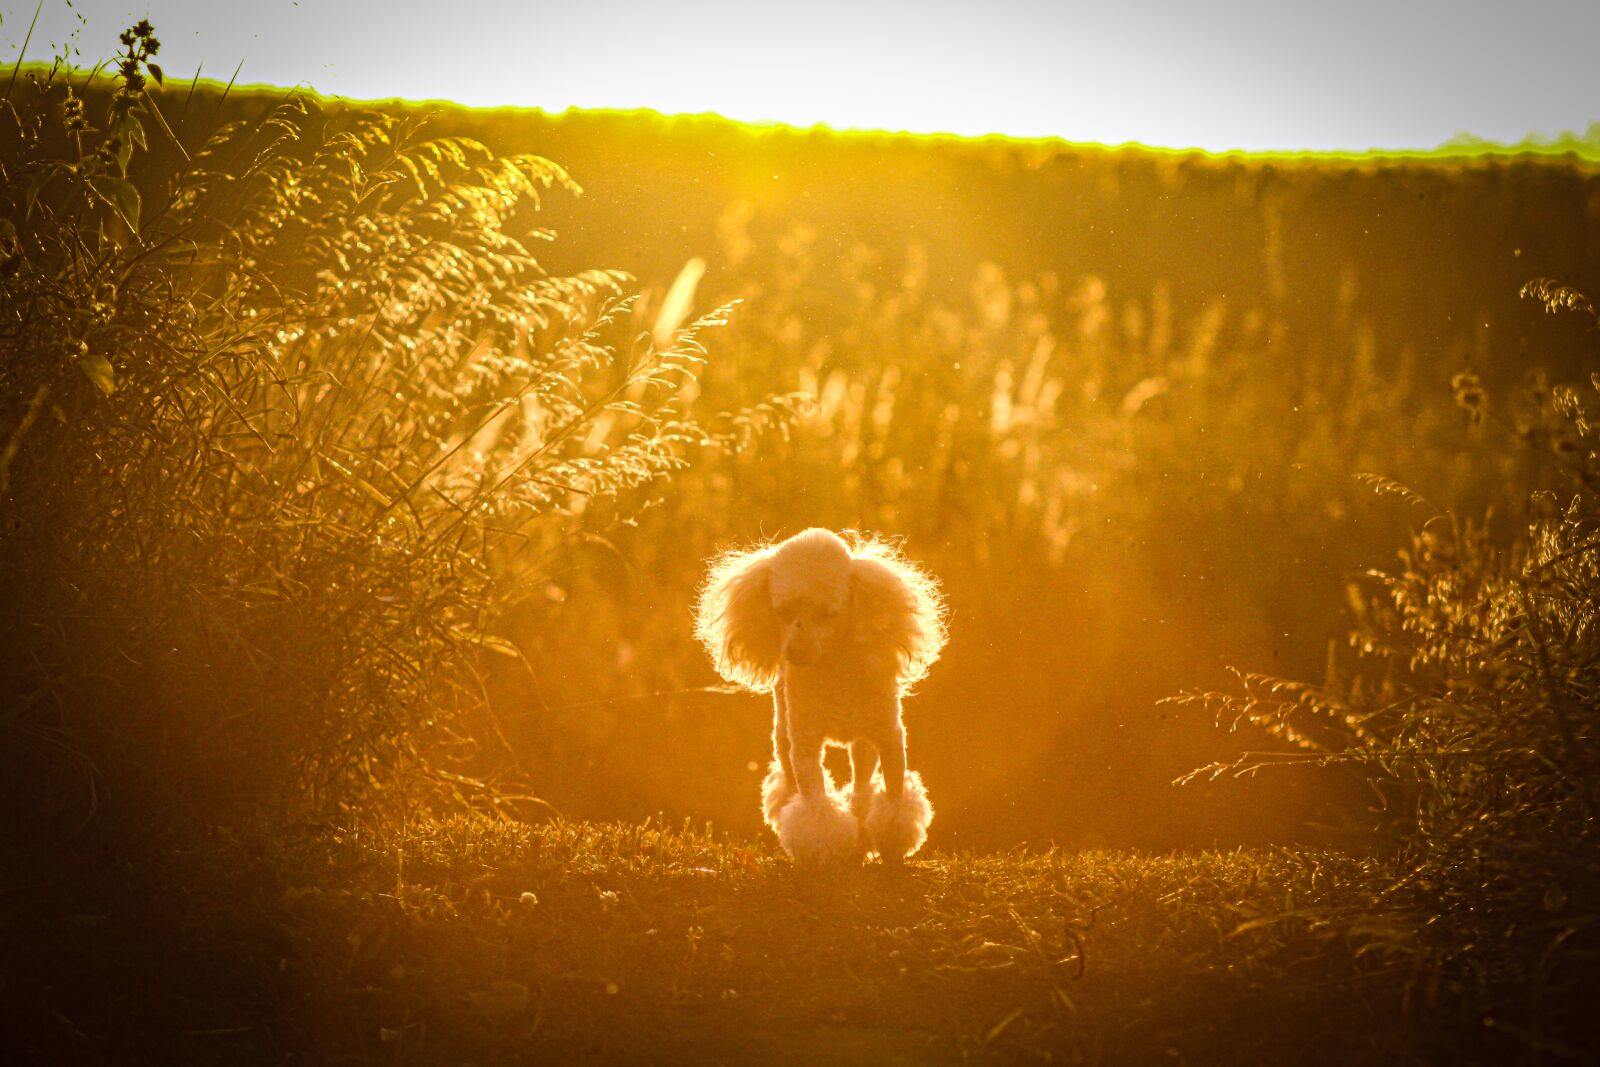 EF75-300mm f/4-5.6 sample photo. Dog, sunset, nature photography